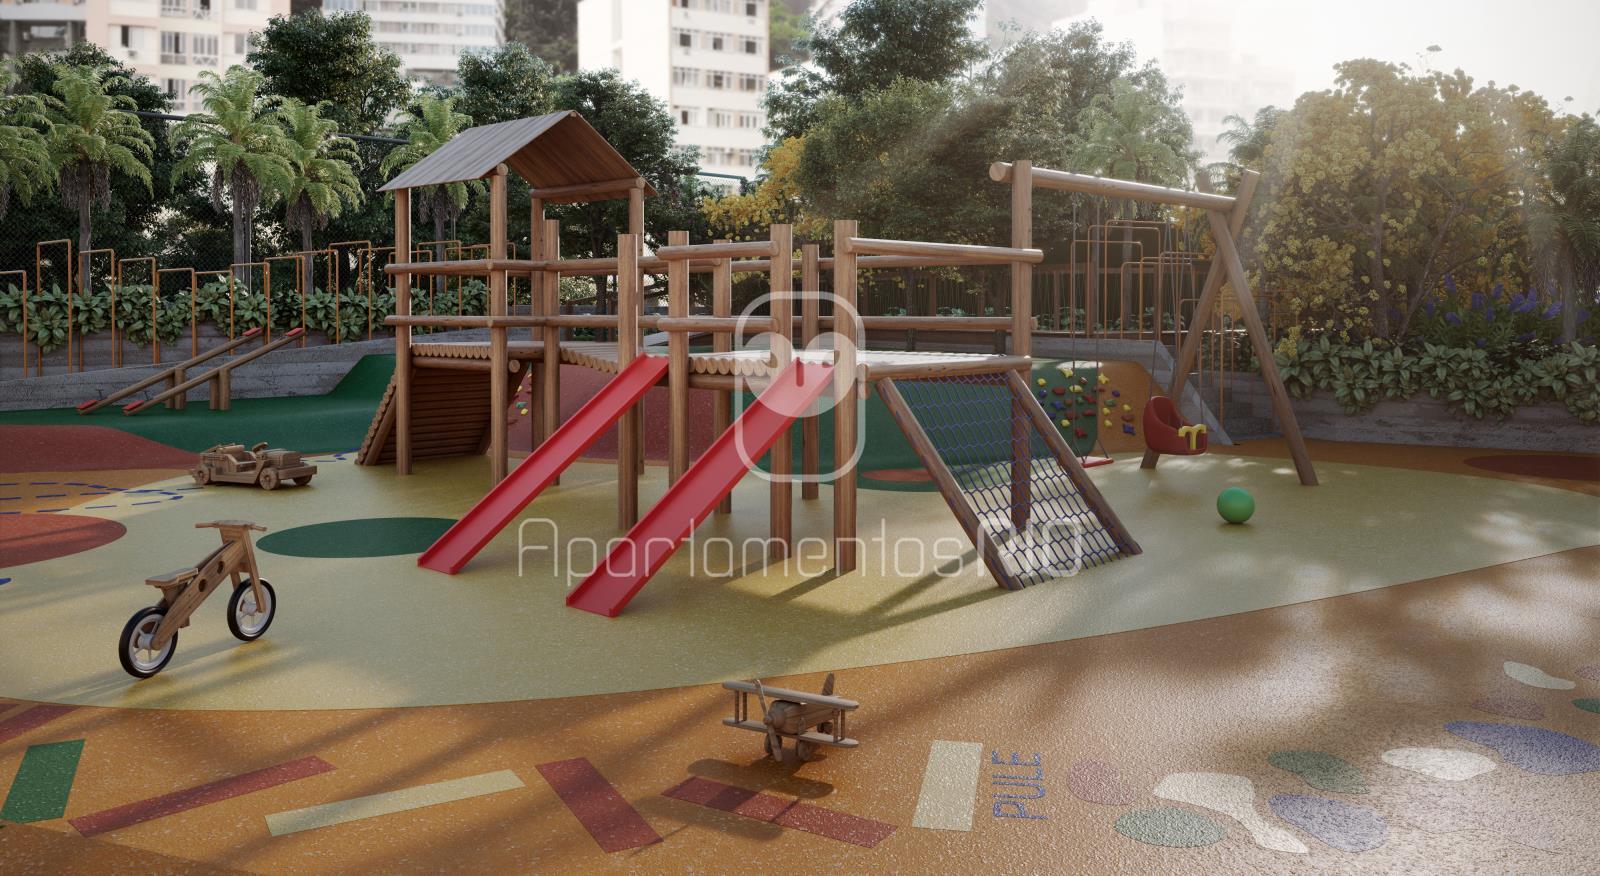 playground e muito mais na maior area de lazer privativa da zona sul do rio de janeiro